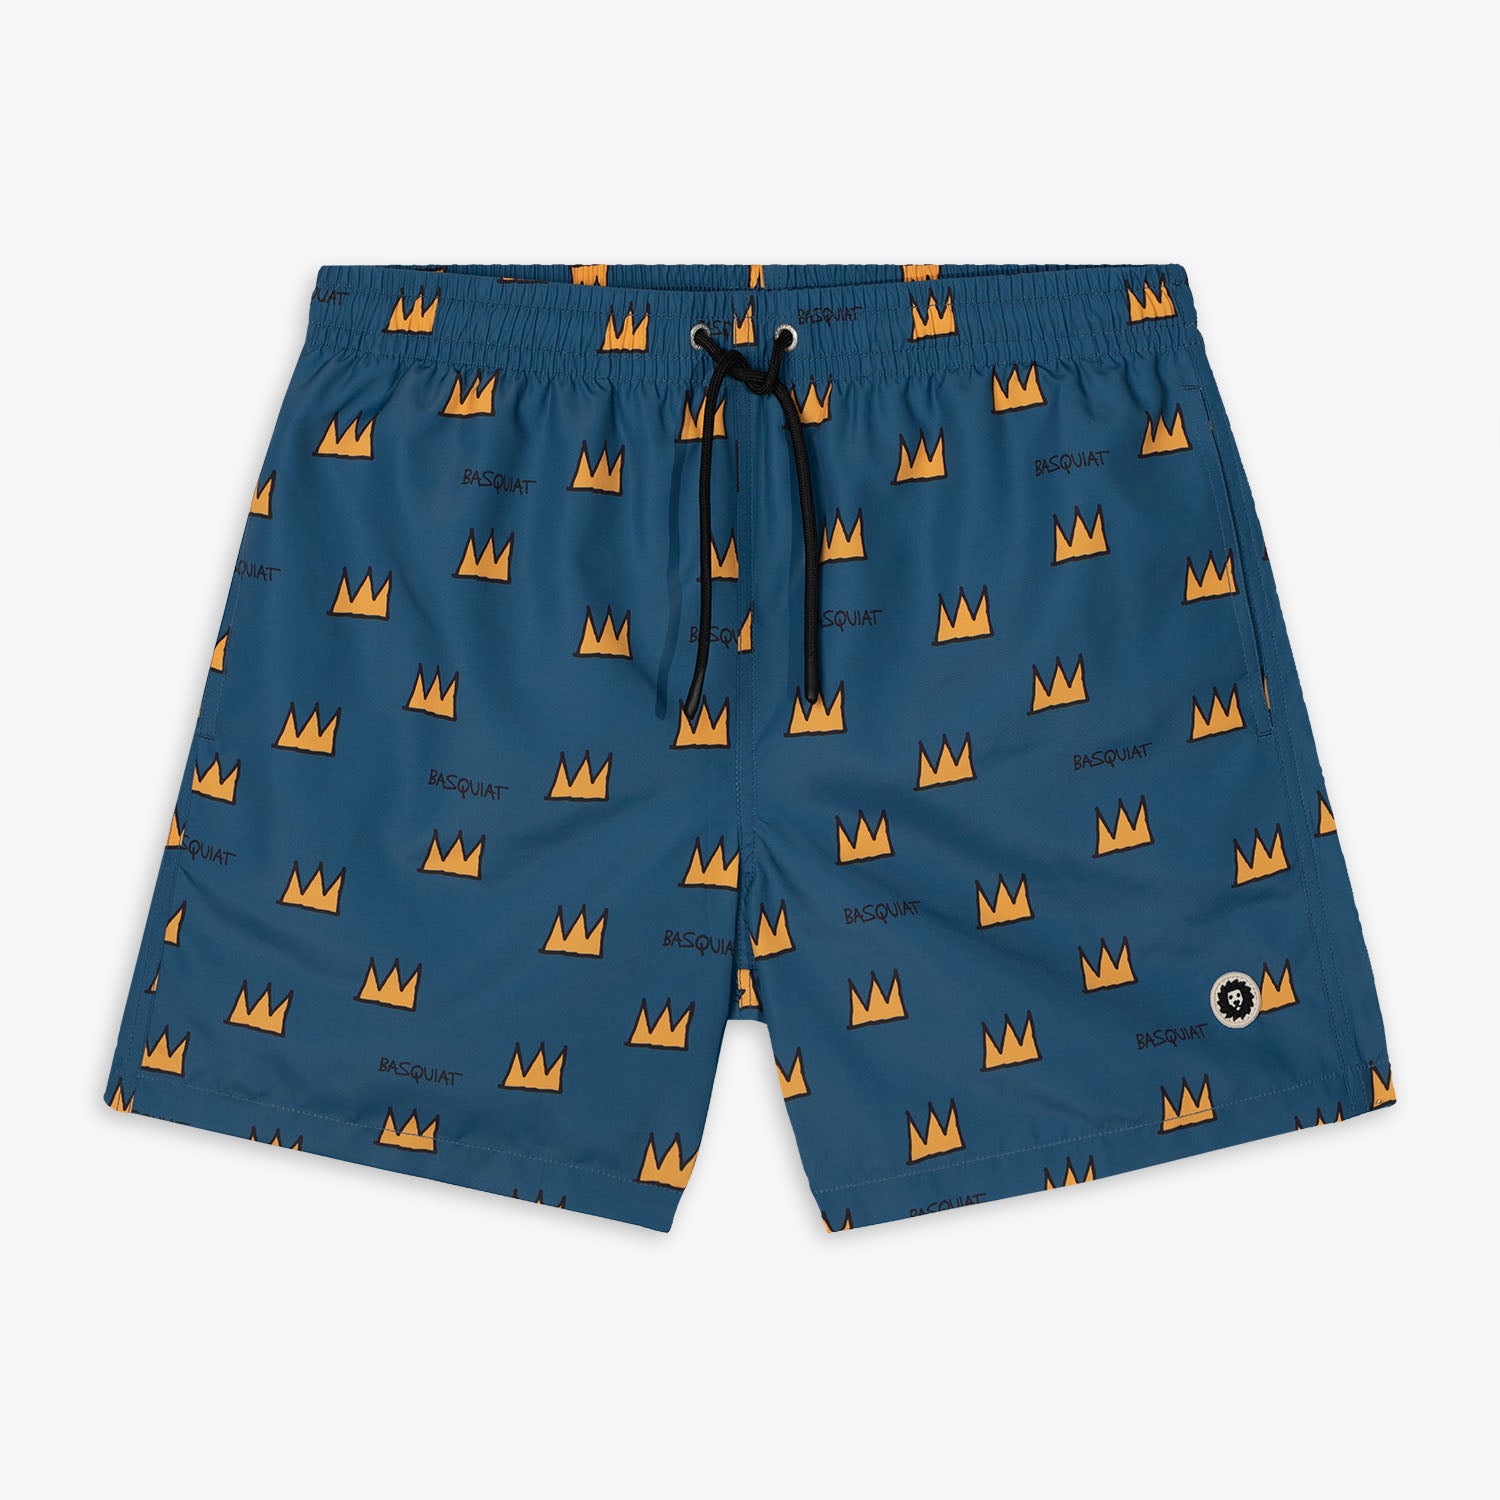 Basquiat Crown Swim Shorts - Dark Blue